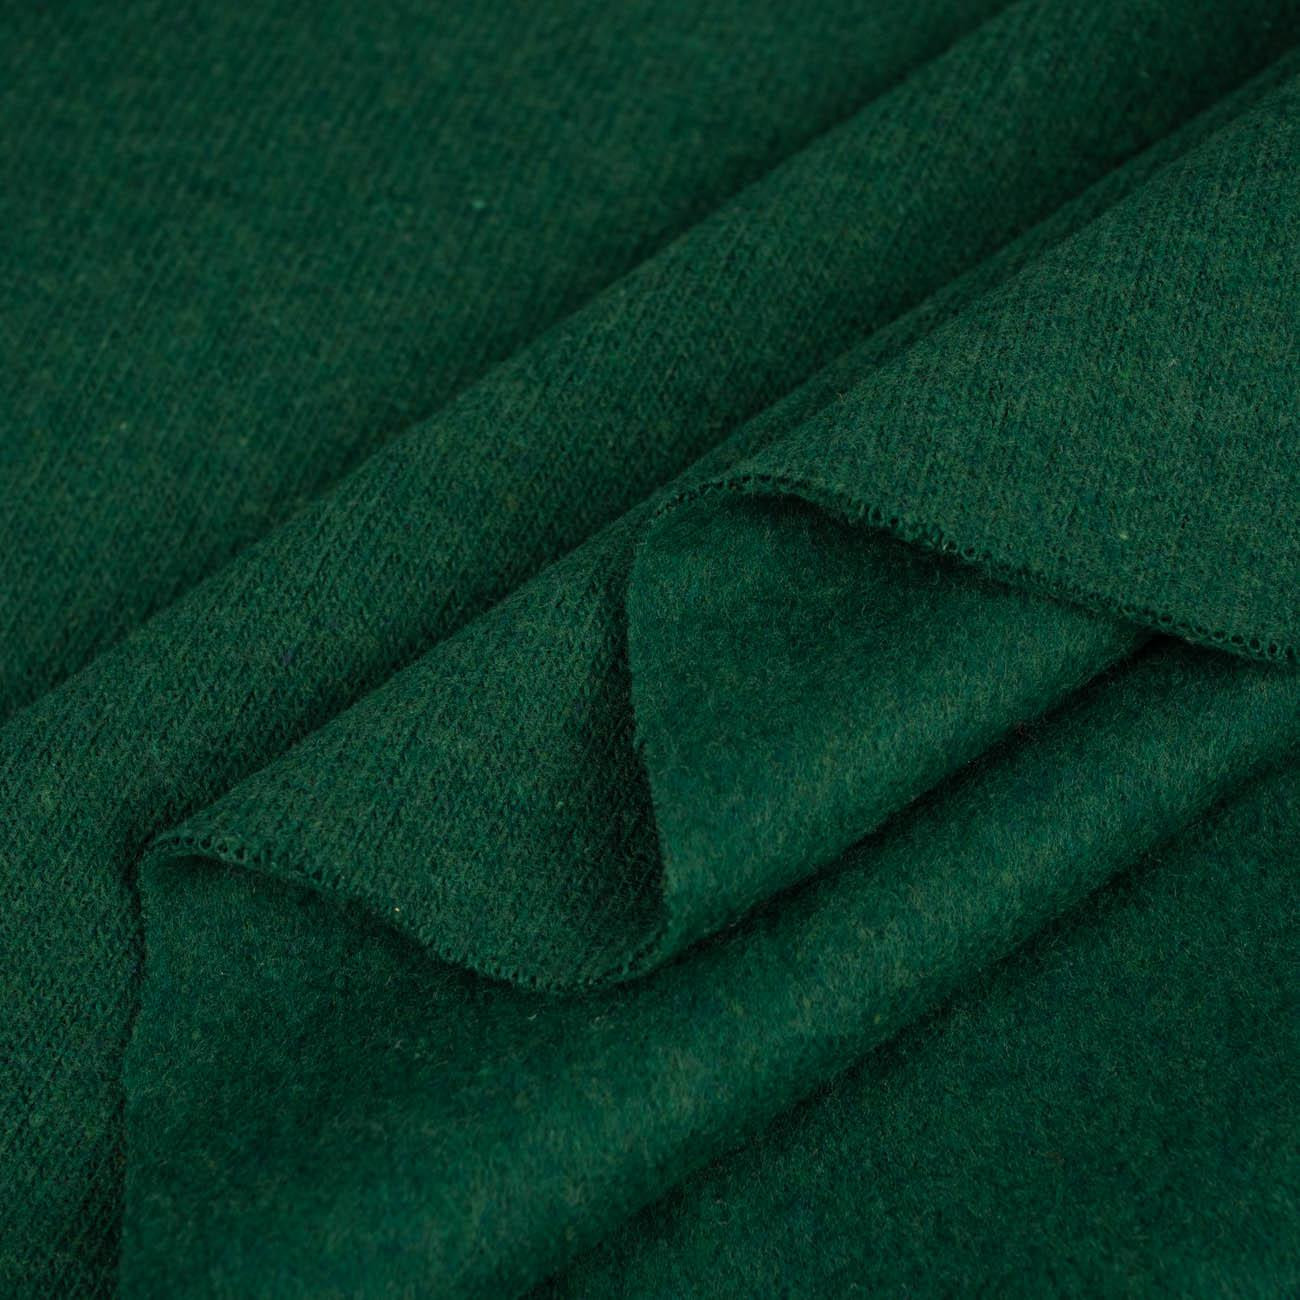 BOTTLE GREEN - Emery sweater knit. 270g